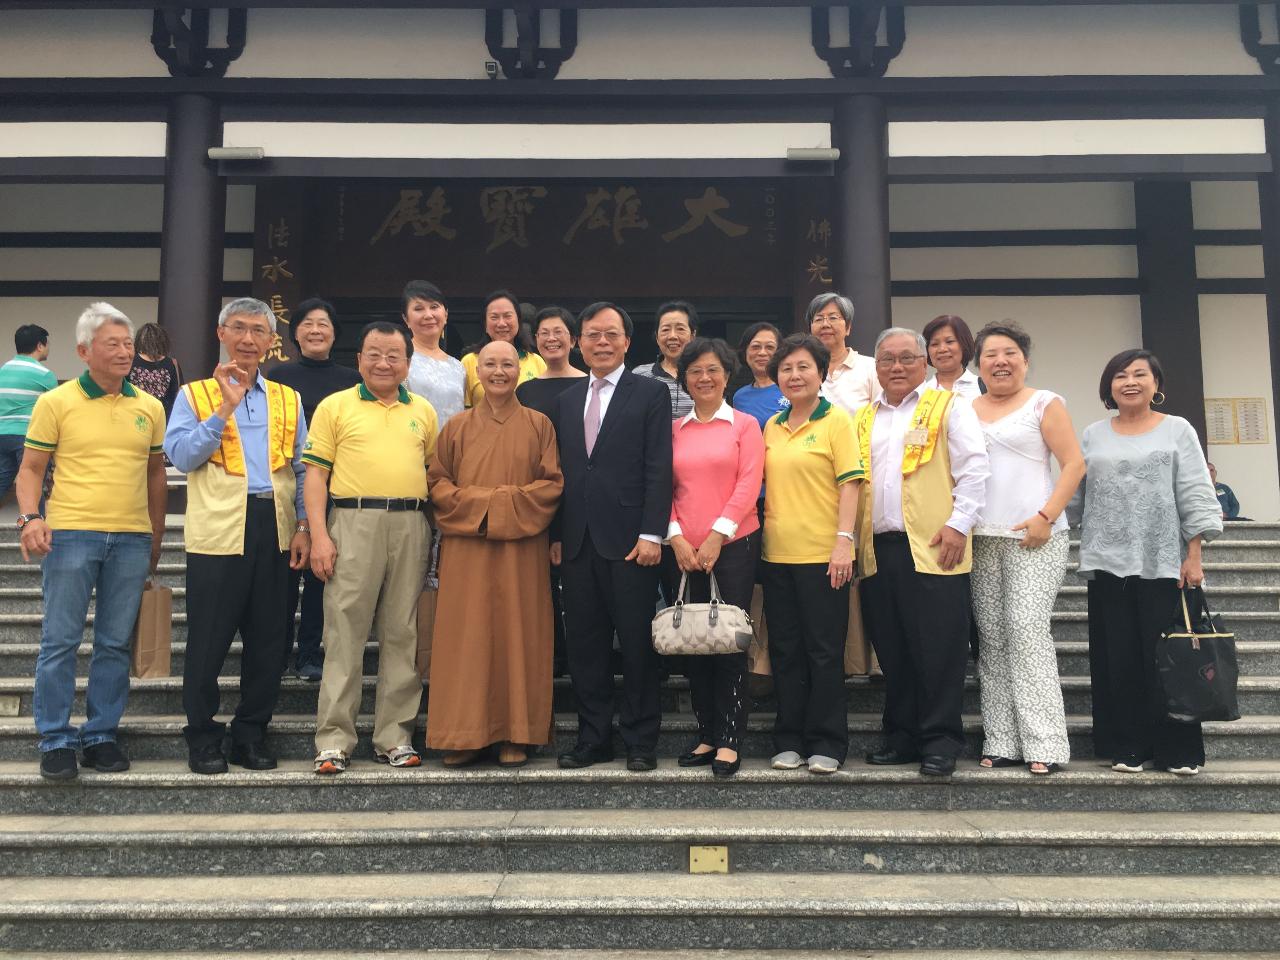 O Embaixador Her e a esposa visitaram em 29 de julho ao Templo Zu Lai, situado em Cotia na região metropolitana de São Paulo, que é o primeiro templo budista do Monastério Fo Guang Shan na América Latina.